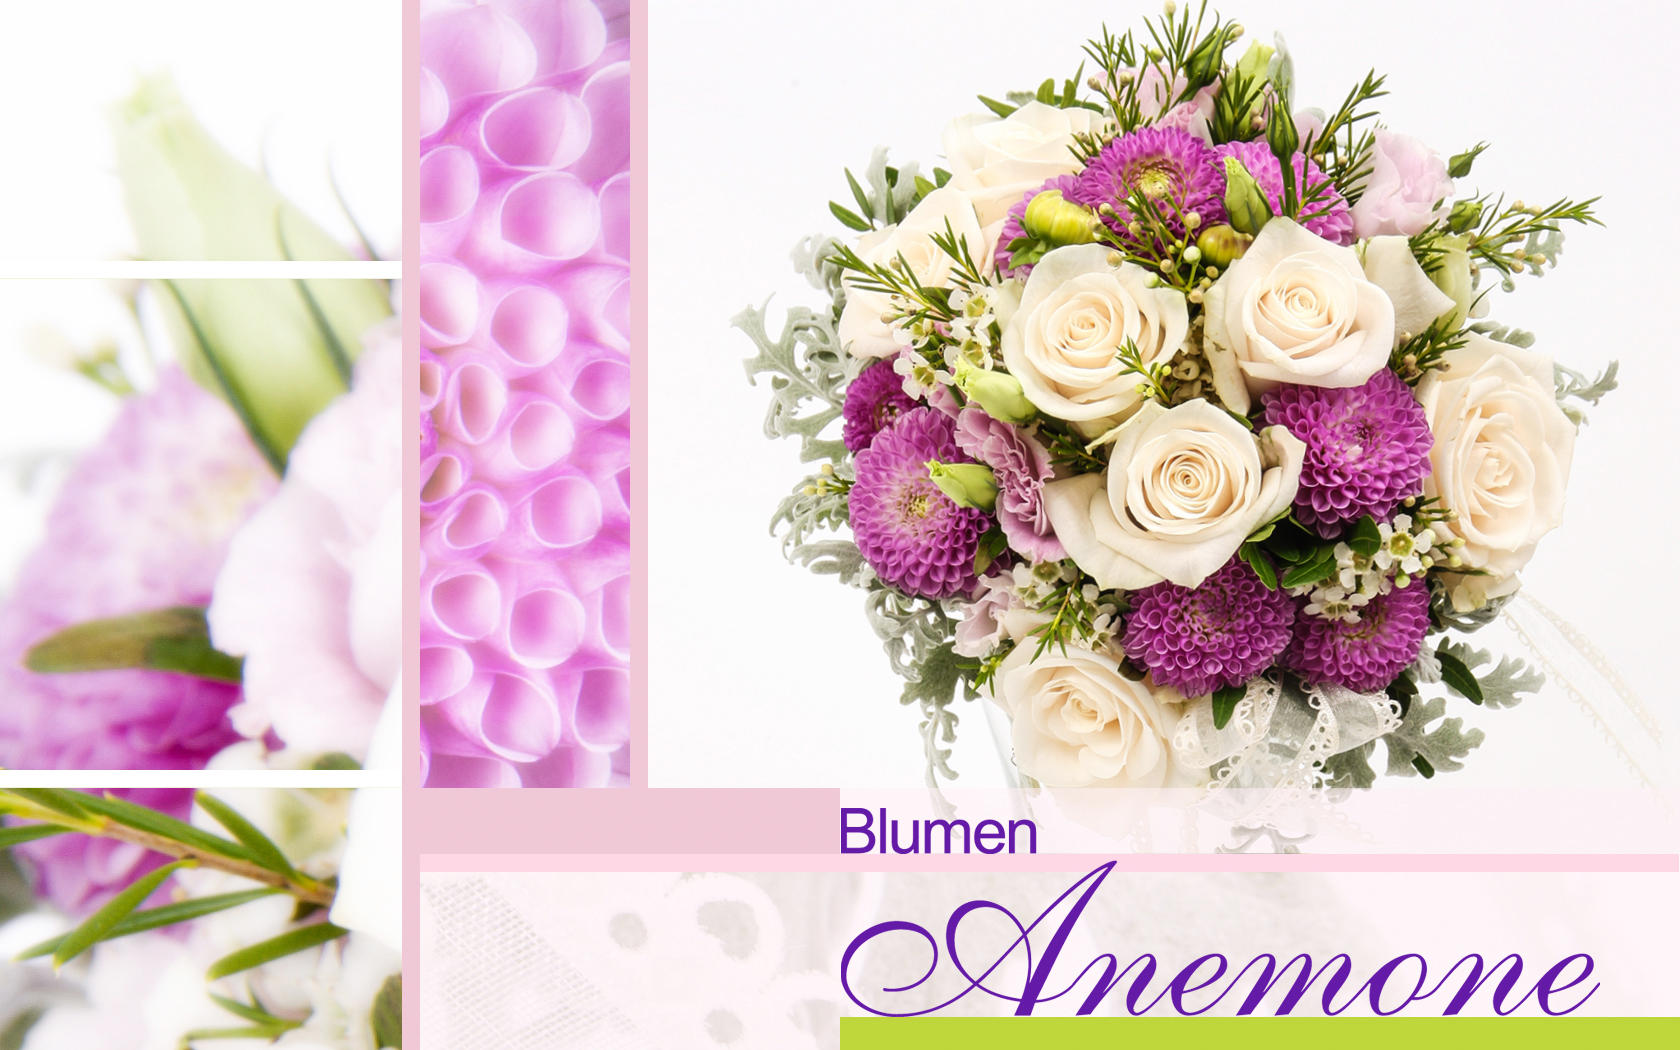 Kundenbild groß 6 Blumen Anemone